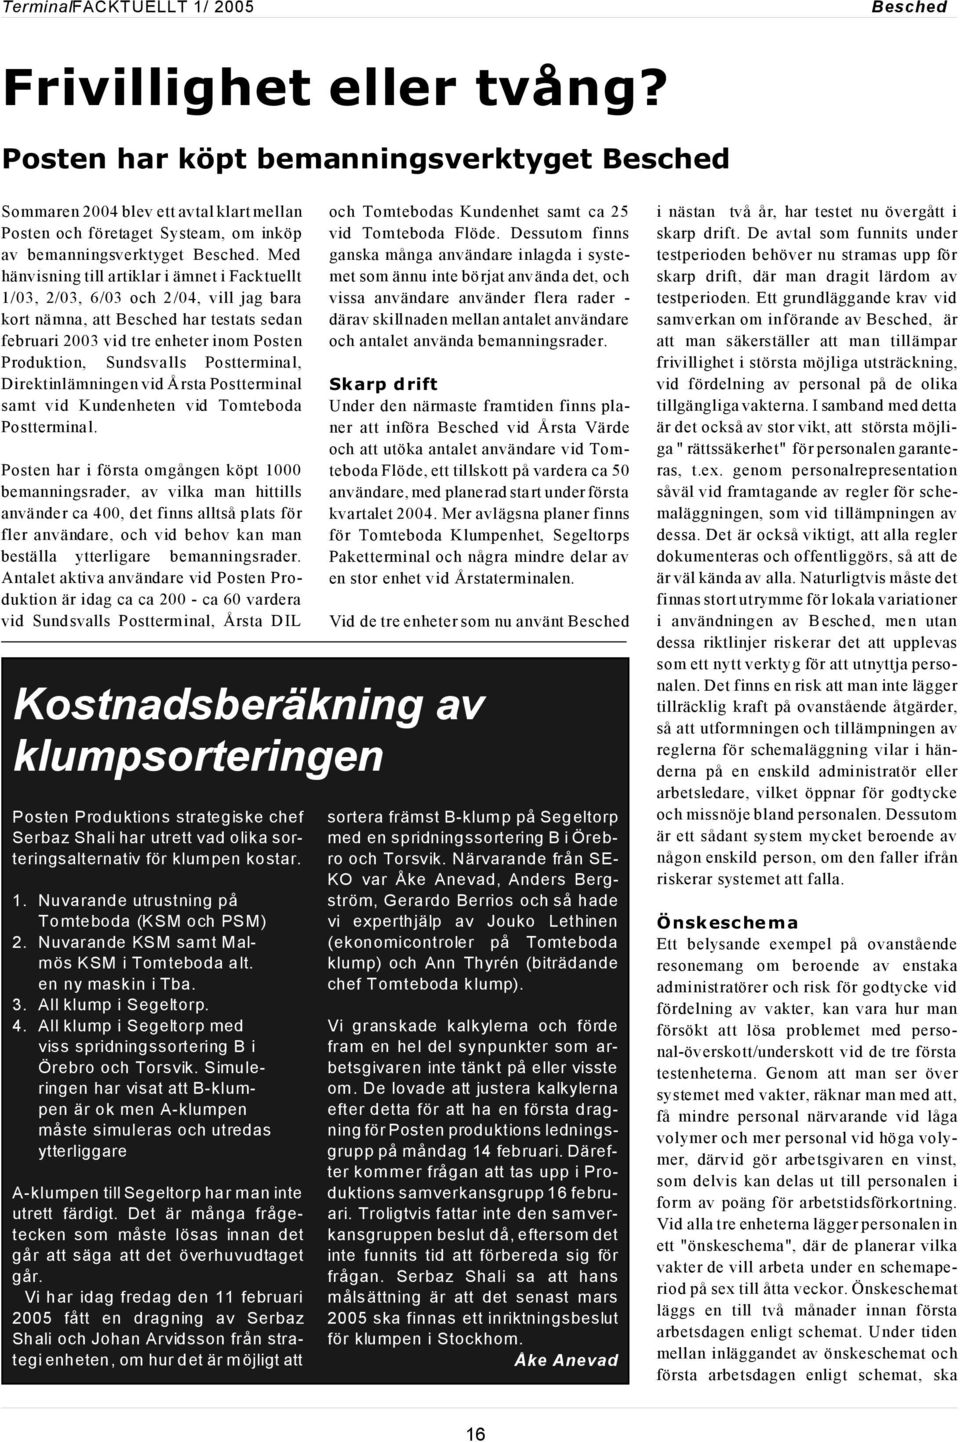 Med hänvisning till artiklar i ämnet i Facktuellt 1/03, 2/03, 6/03 och 2/04, vill jag bara kort nämna, att Besched har testats sedan februari 2003 vid tre enheter inom Posten Produktion, Sundsvalls